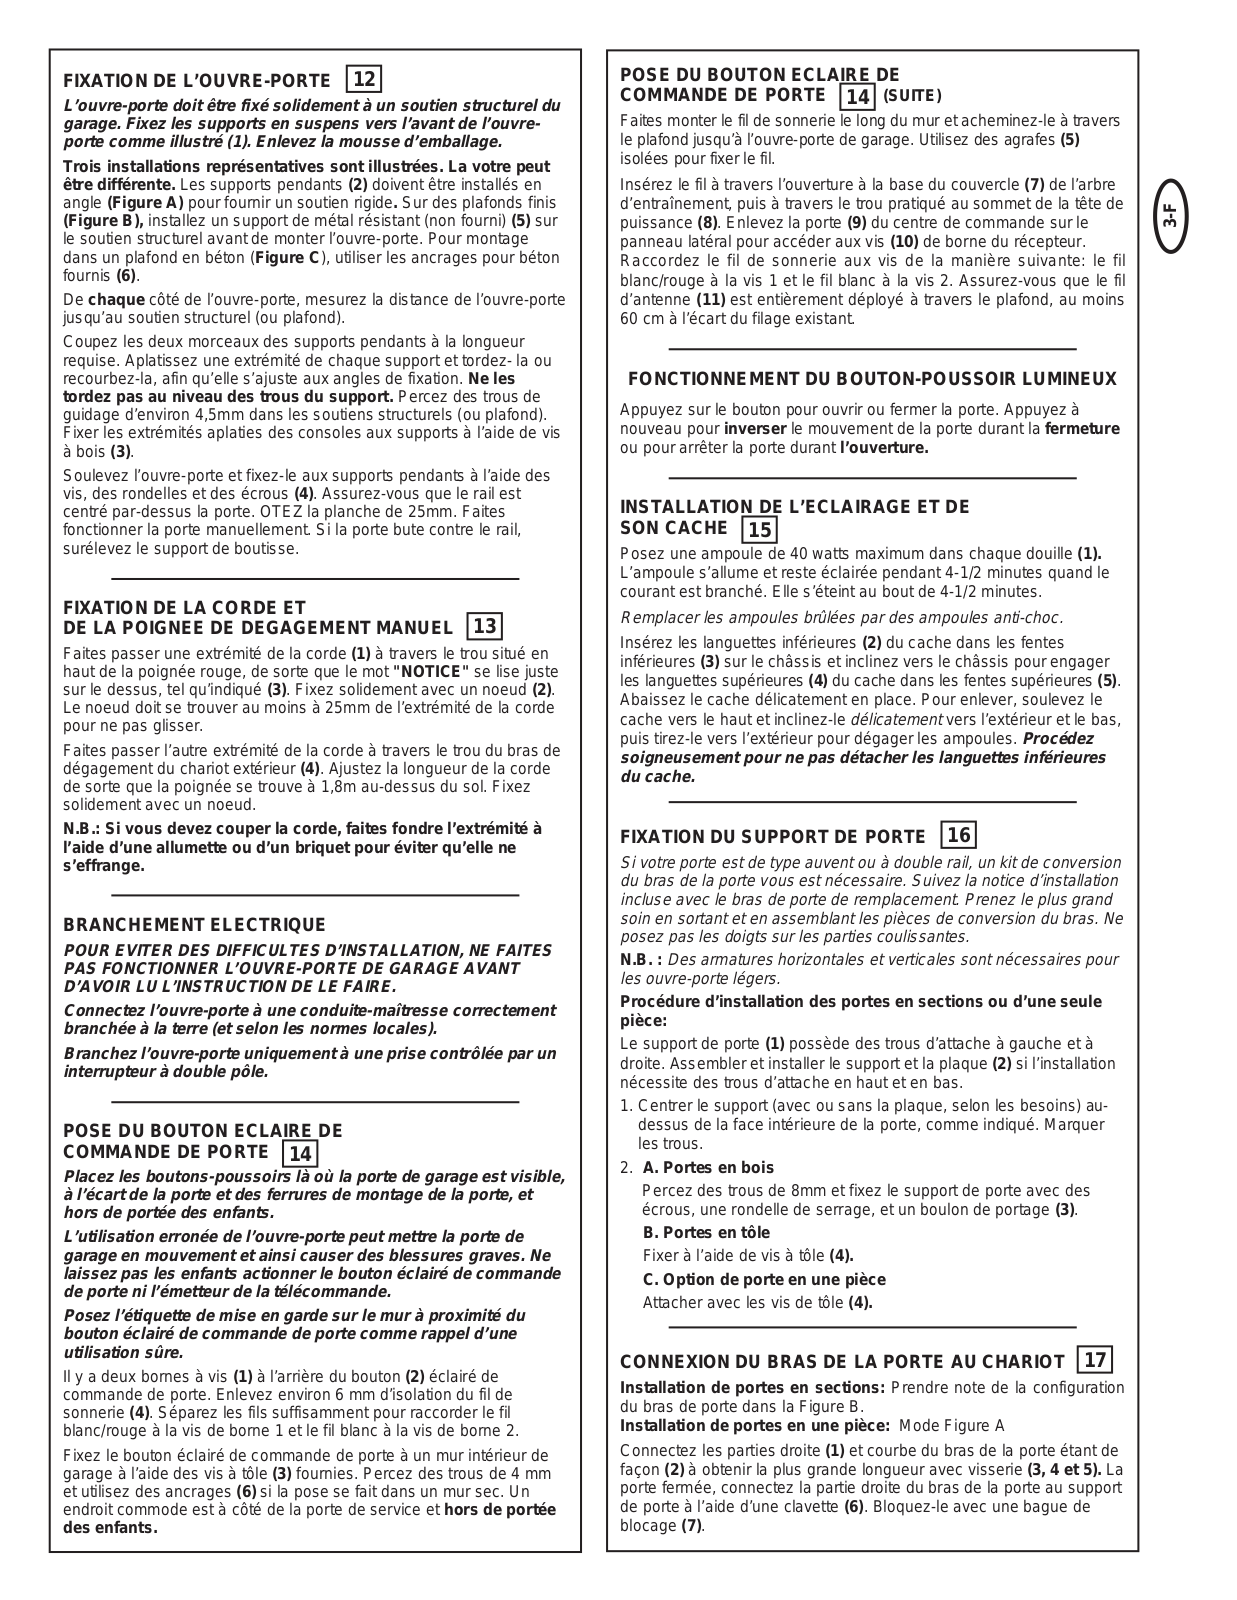 Chamberlain LiftMaster PRO 9000 User Manual